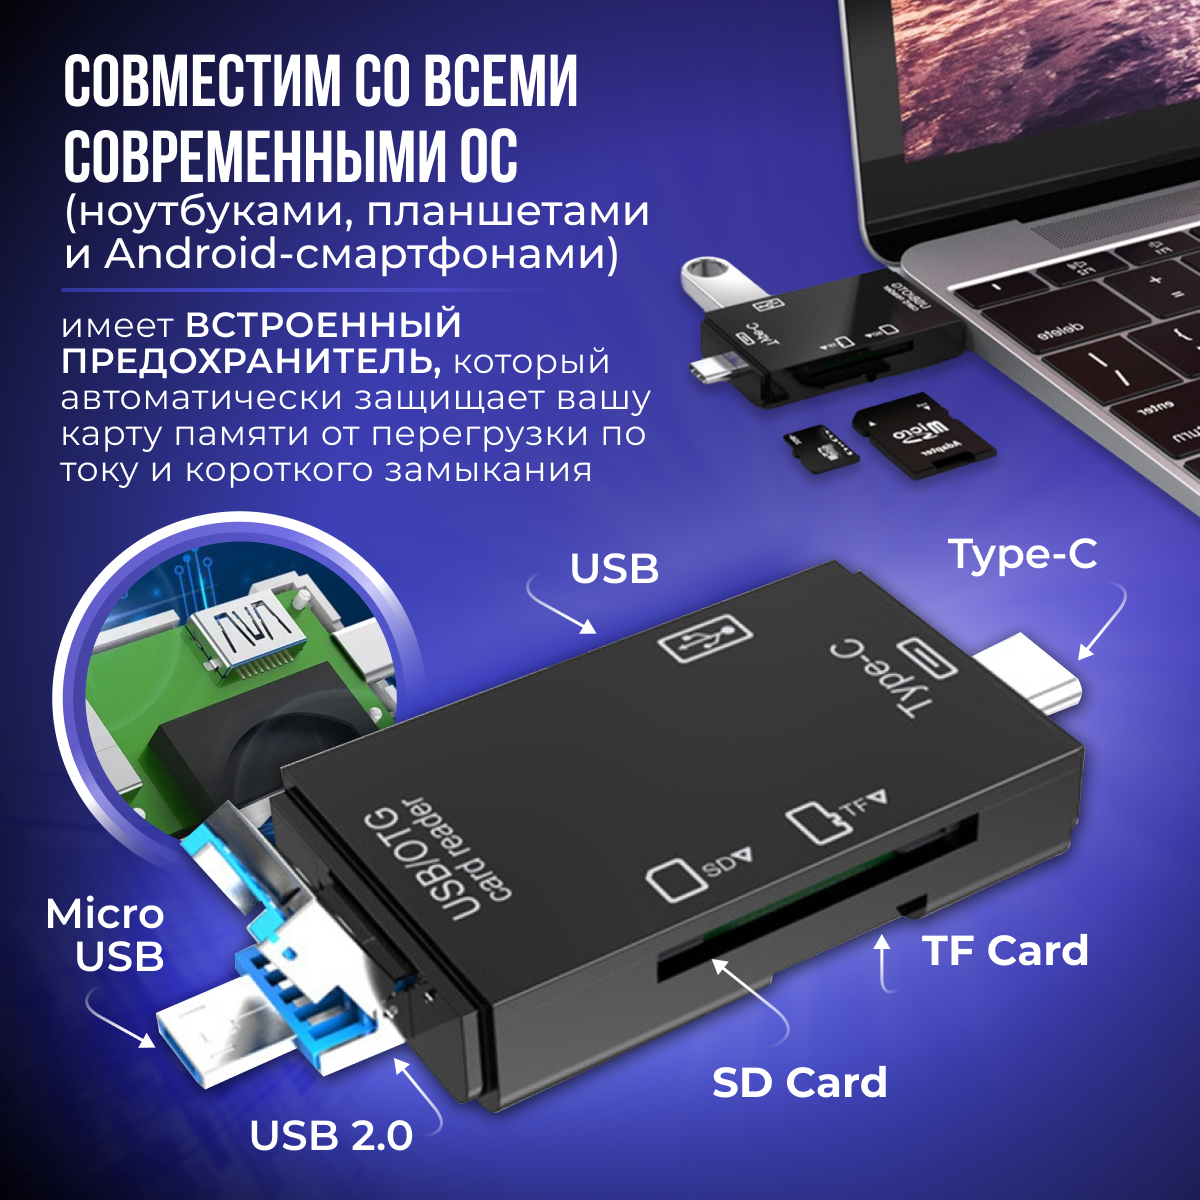 Картридер ридер 6 в 1 OTG: USB, Micro SD, Type-C, Micro USB, TF, Card reader, адаптер-переходник универсальный, черный